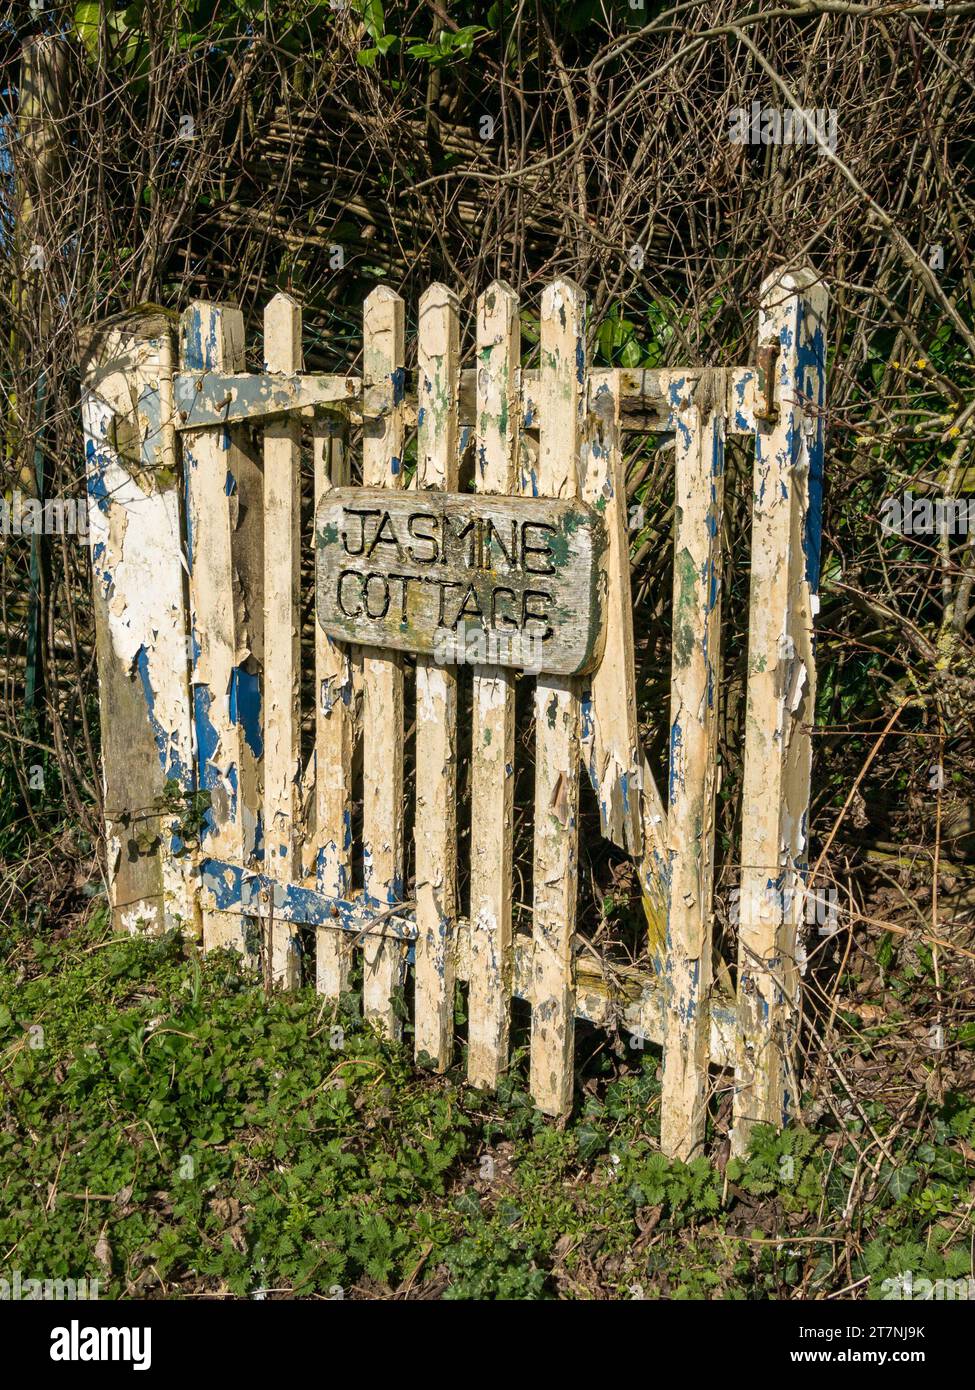 Vecchio cancello del giardino in legno per il "Jasmine Cottage" con vernice peeling e legname marcio, Wyfordby, Leicestershire, Inghilterra, Regno Unito Foto Stock